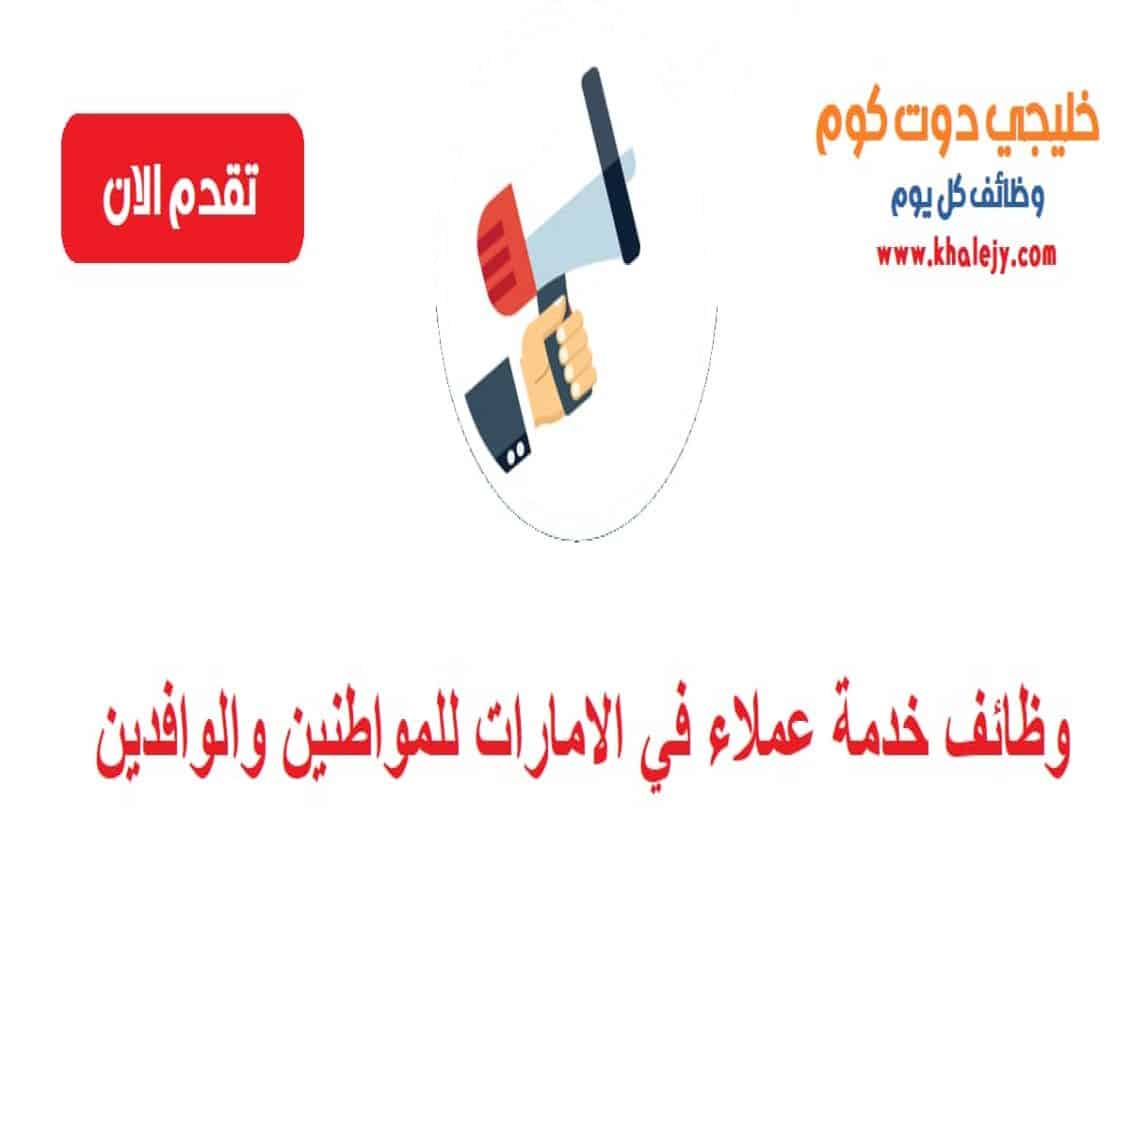 وظائف خدمة عملاء في ابوظبي للمواطنين والوافدين